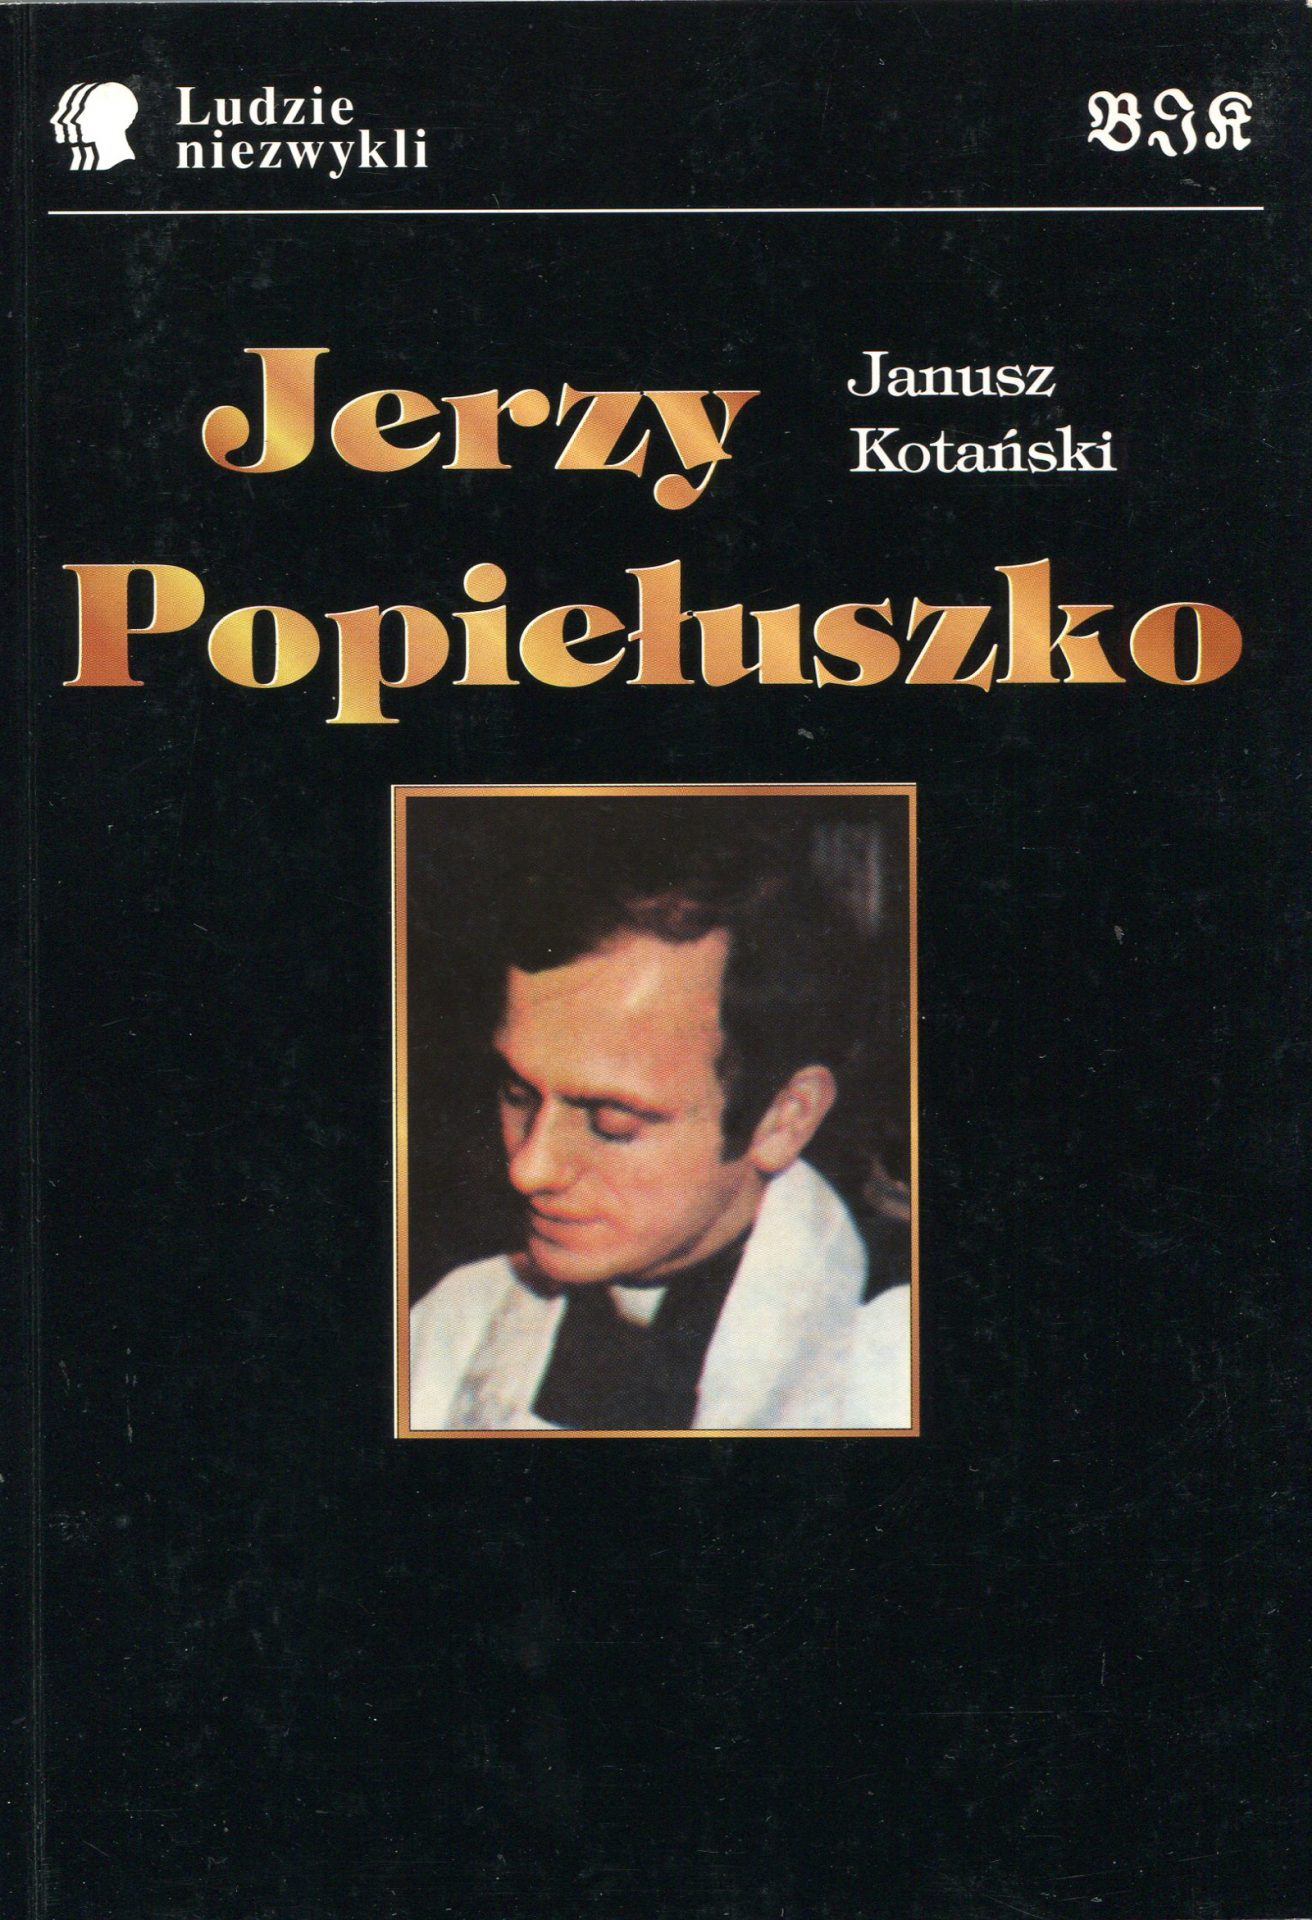 Janusz Kotański, Ksiądz Jerzy Popiełuszko